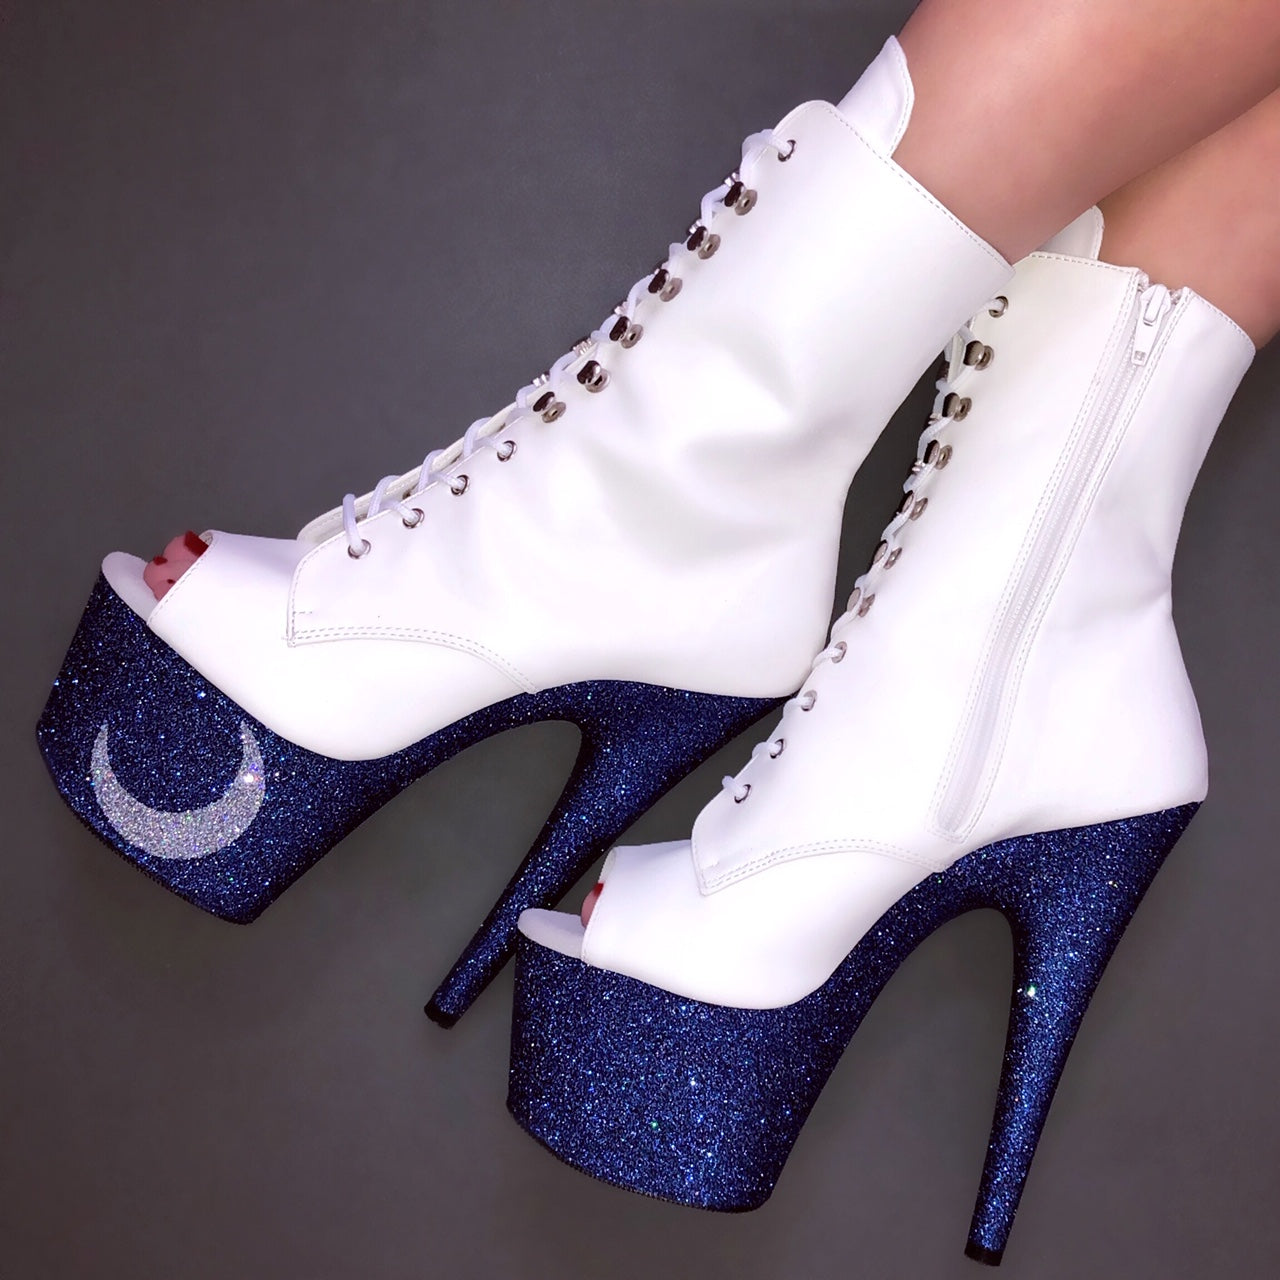 sailor heels